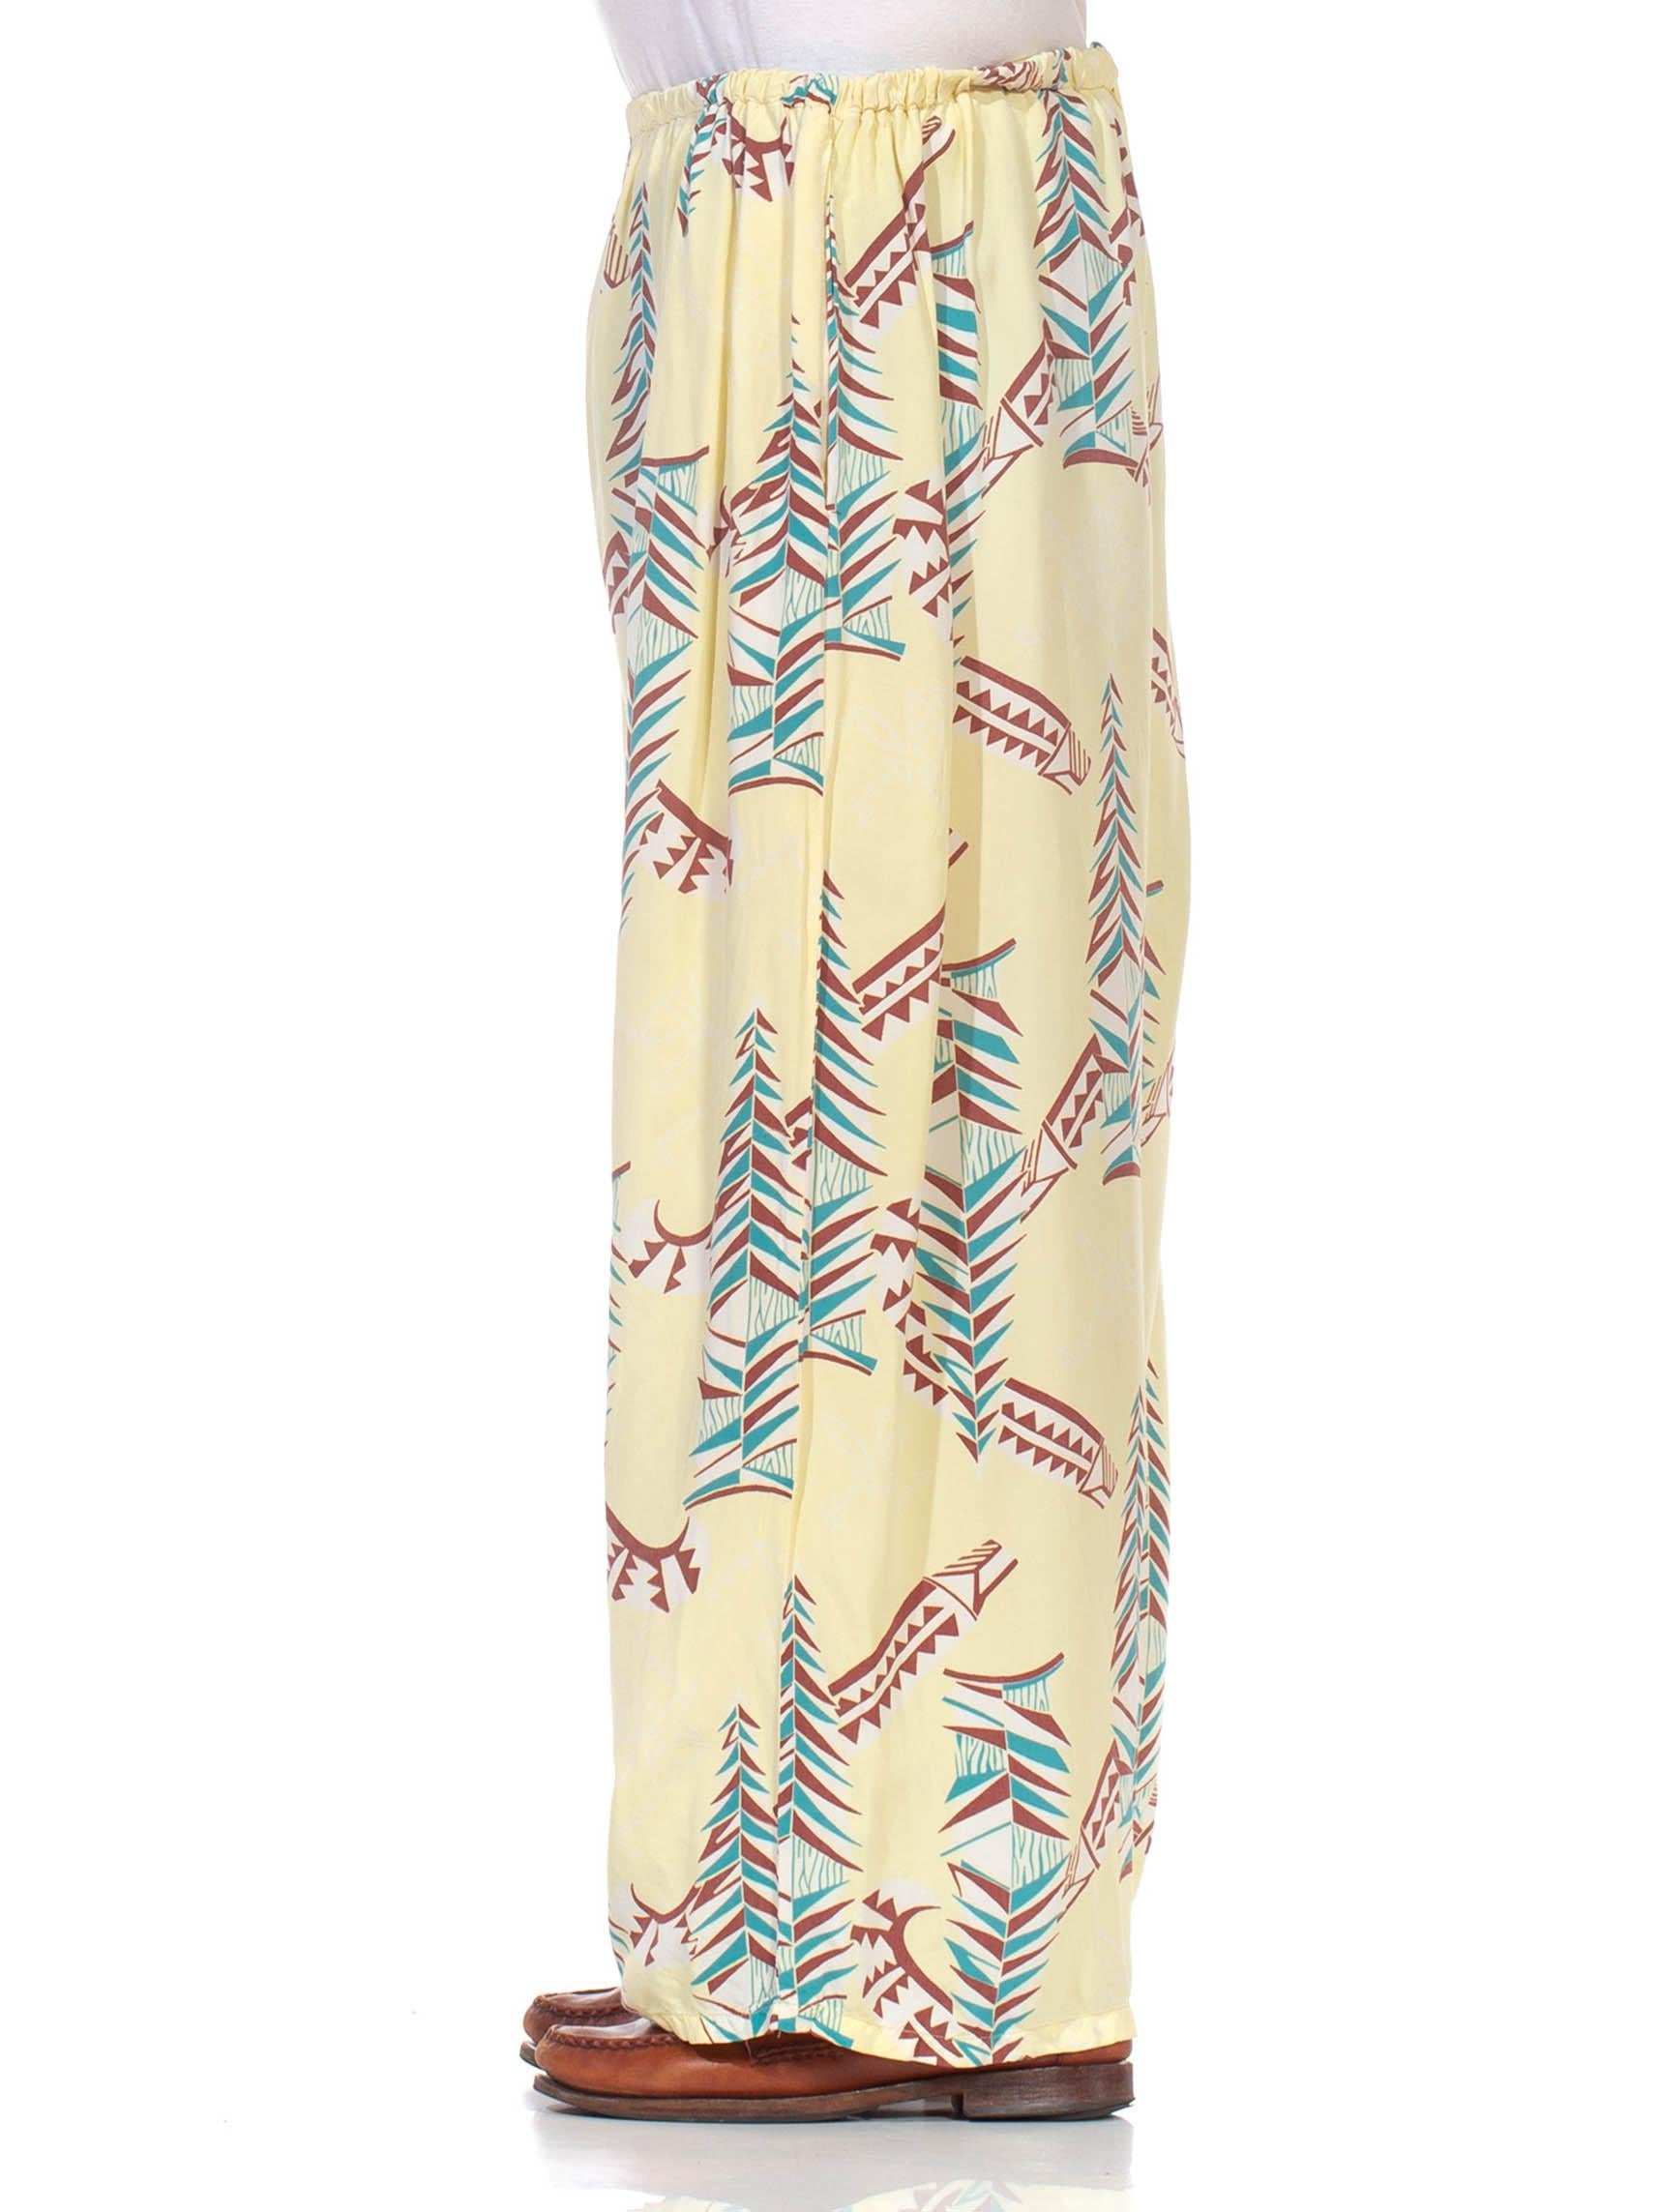 Elastische Taille, um viele Größen zu passen, sehr leichtes Ausbleichen und Nadellöcher mit dem Alter erwartet.  1940S Butter Gelb Braun & Teal Rayon Pyjama Lounge Hosen 